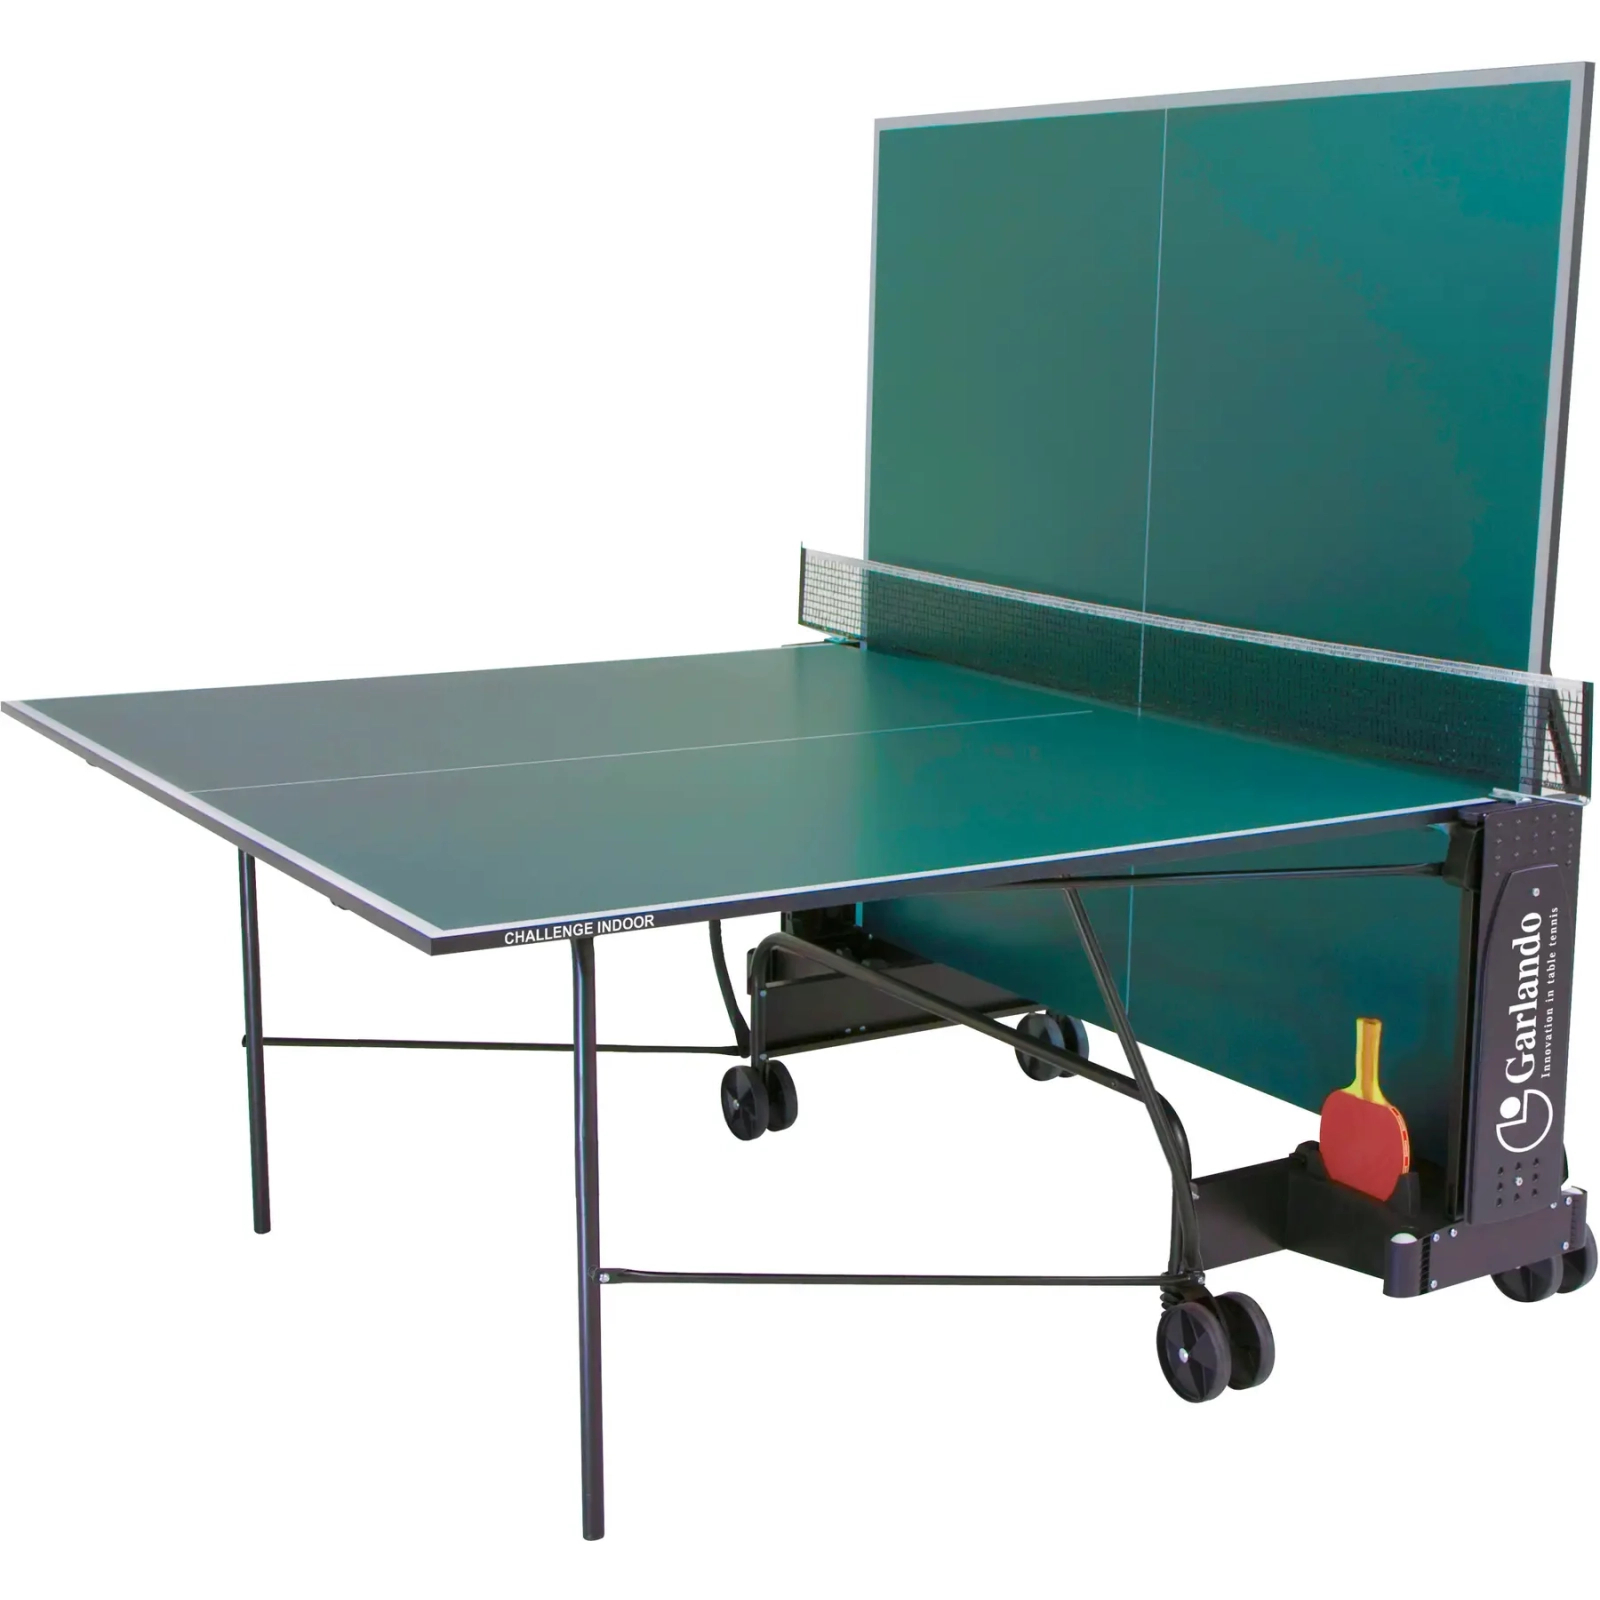 Теннисный стол Garlando Challenge Indoor 16 mm Green (C-272I) (930619) изображение 2